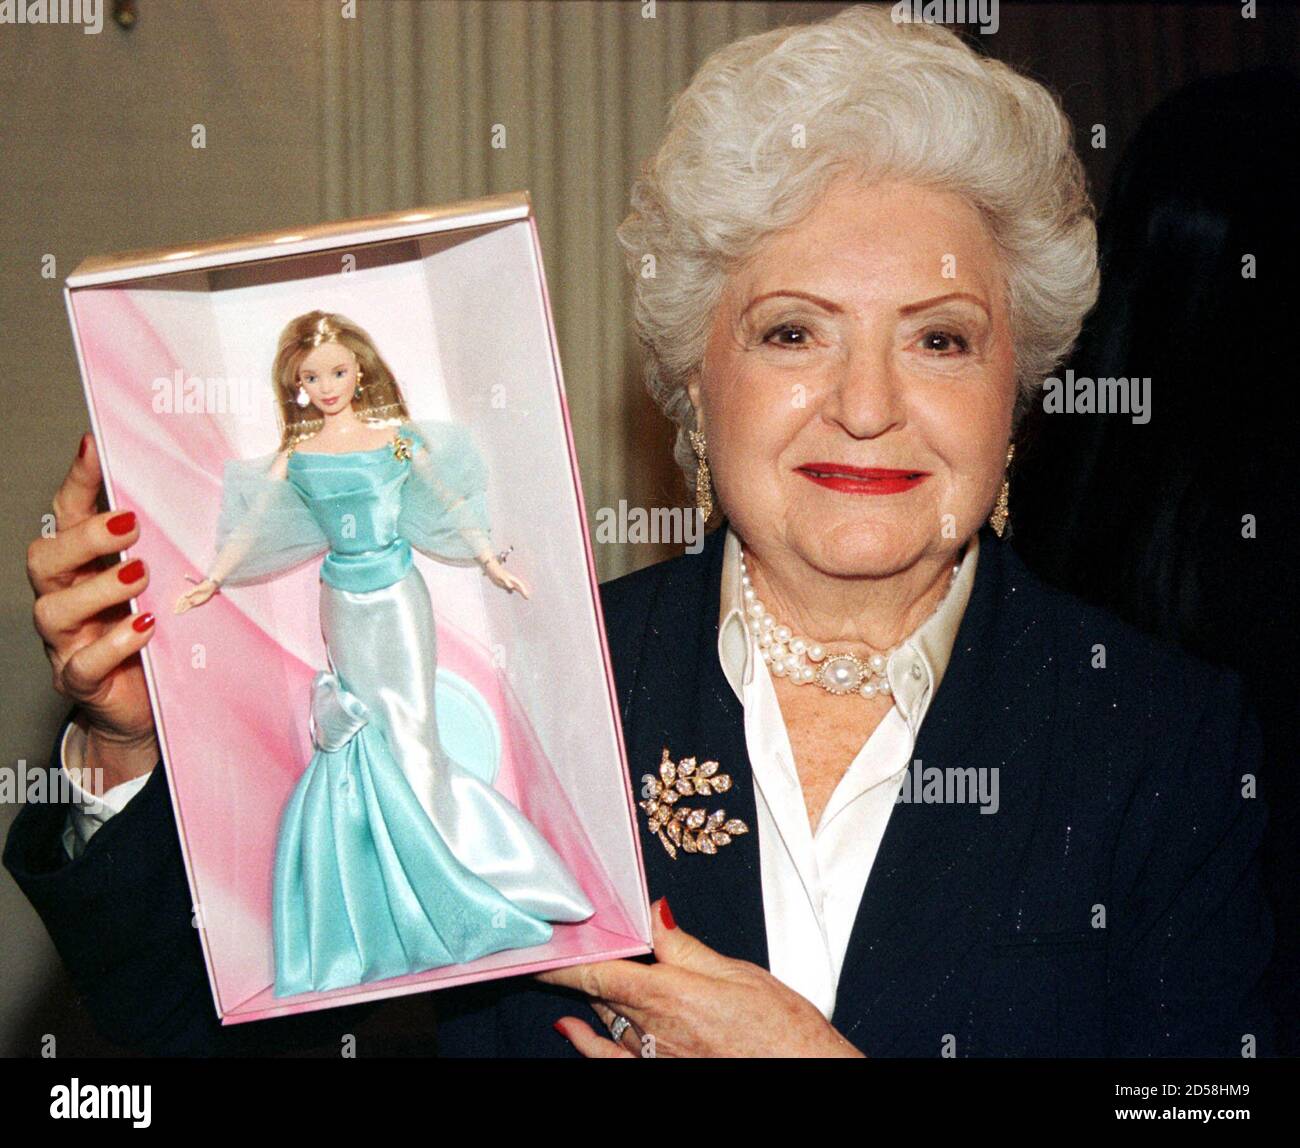 Ruth Handler, que creó Barbie, la muñeca más popular del mundo, murió el 27  de abril de 2002 a la edad de 85 años. Handler sostiene una muñeca Barbie  creada para la